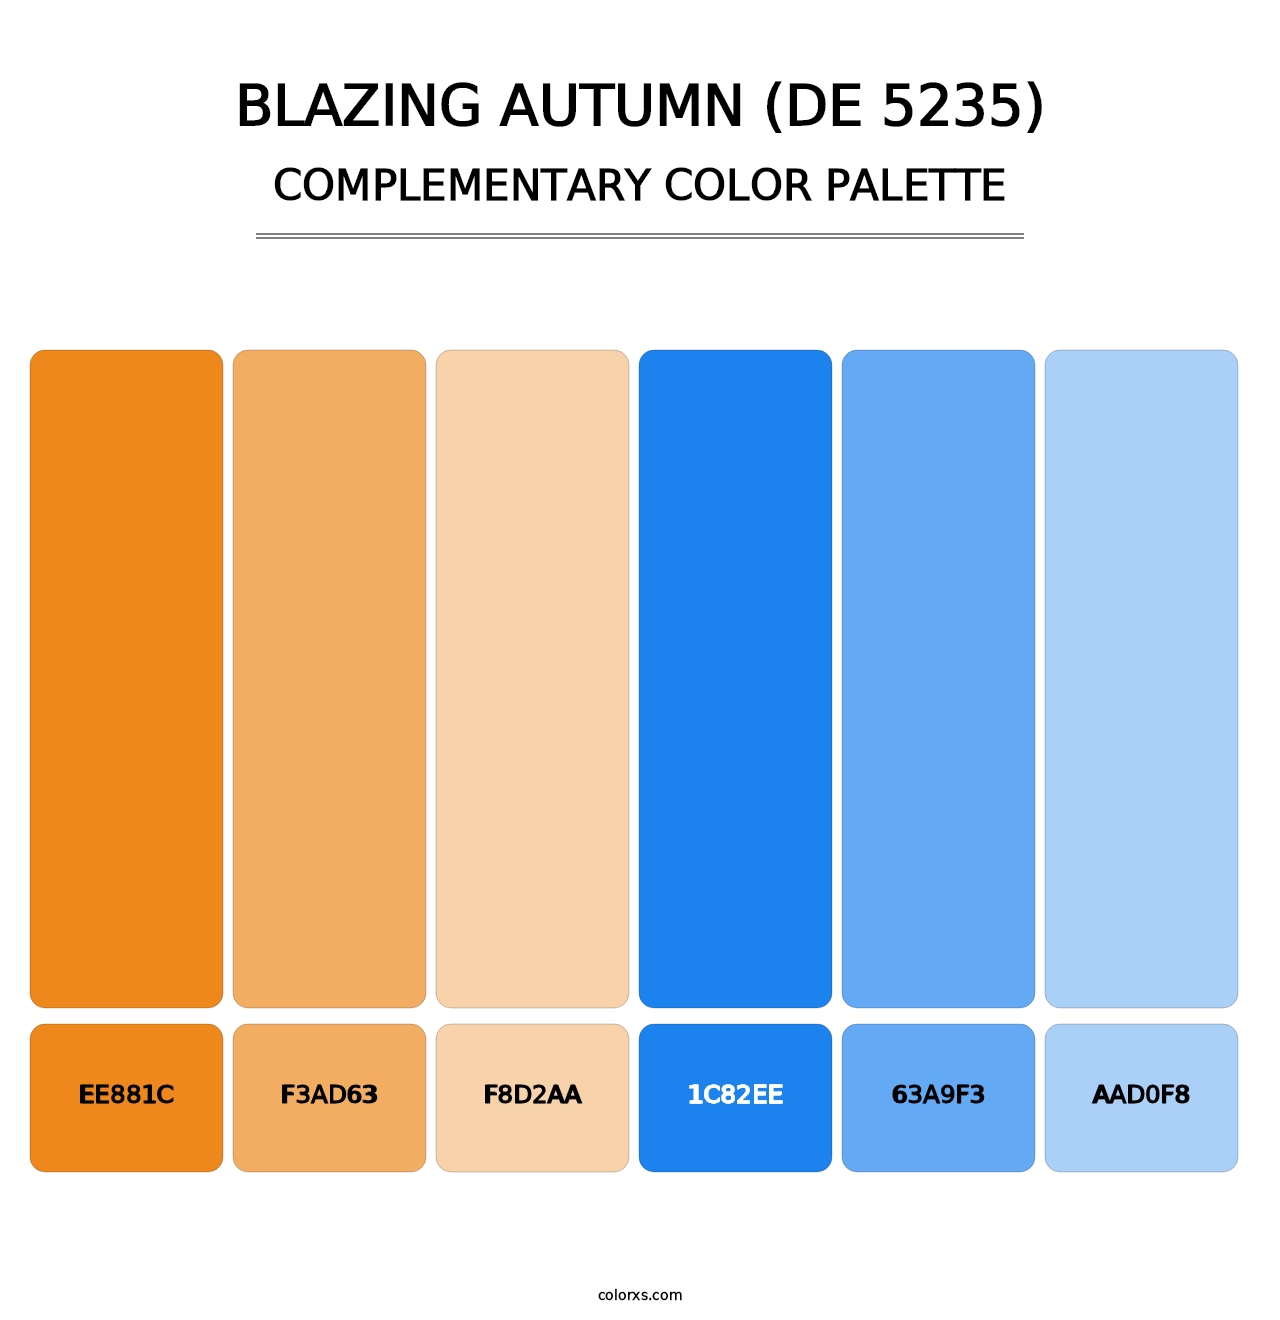 Blazing Autumn (DE 5235) - Complementary Color Palette